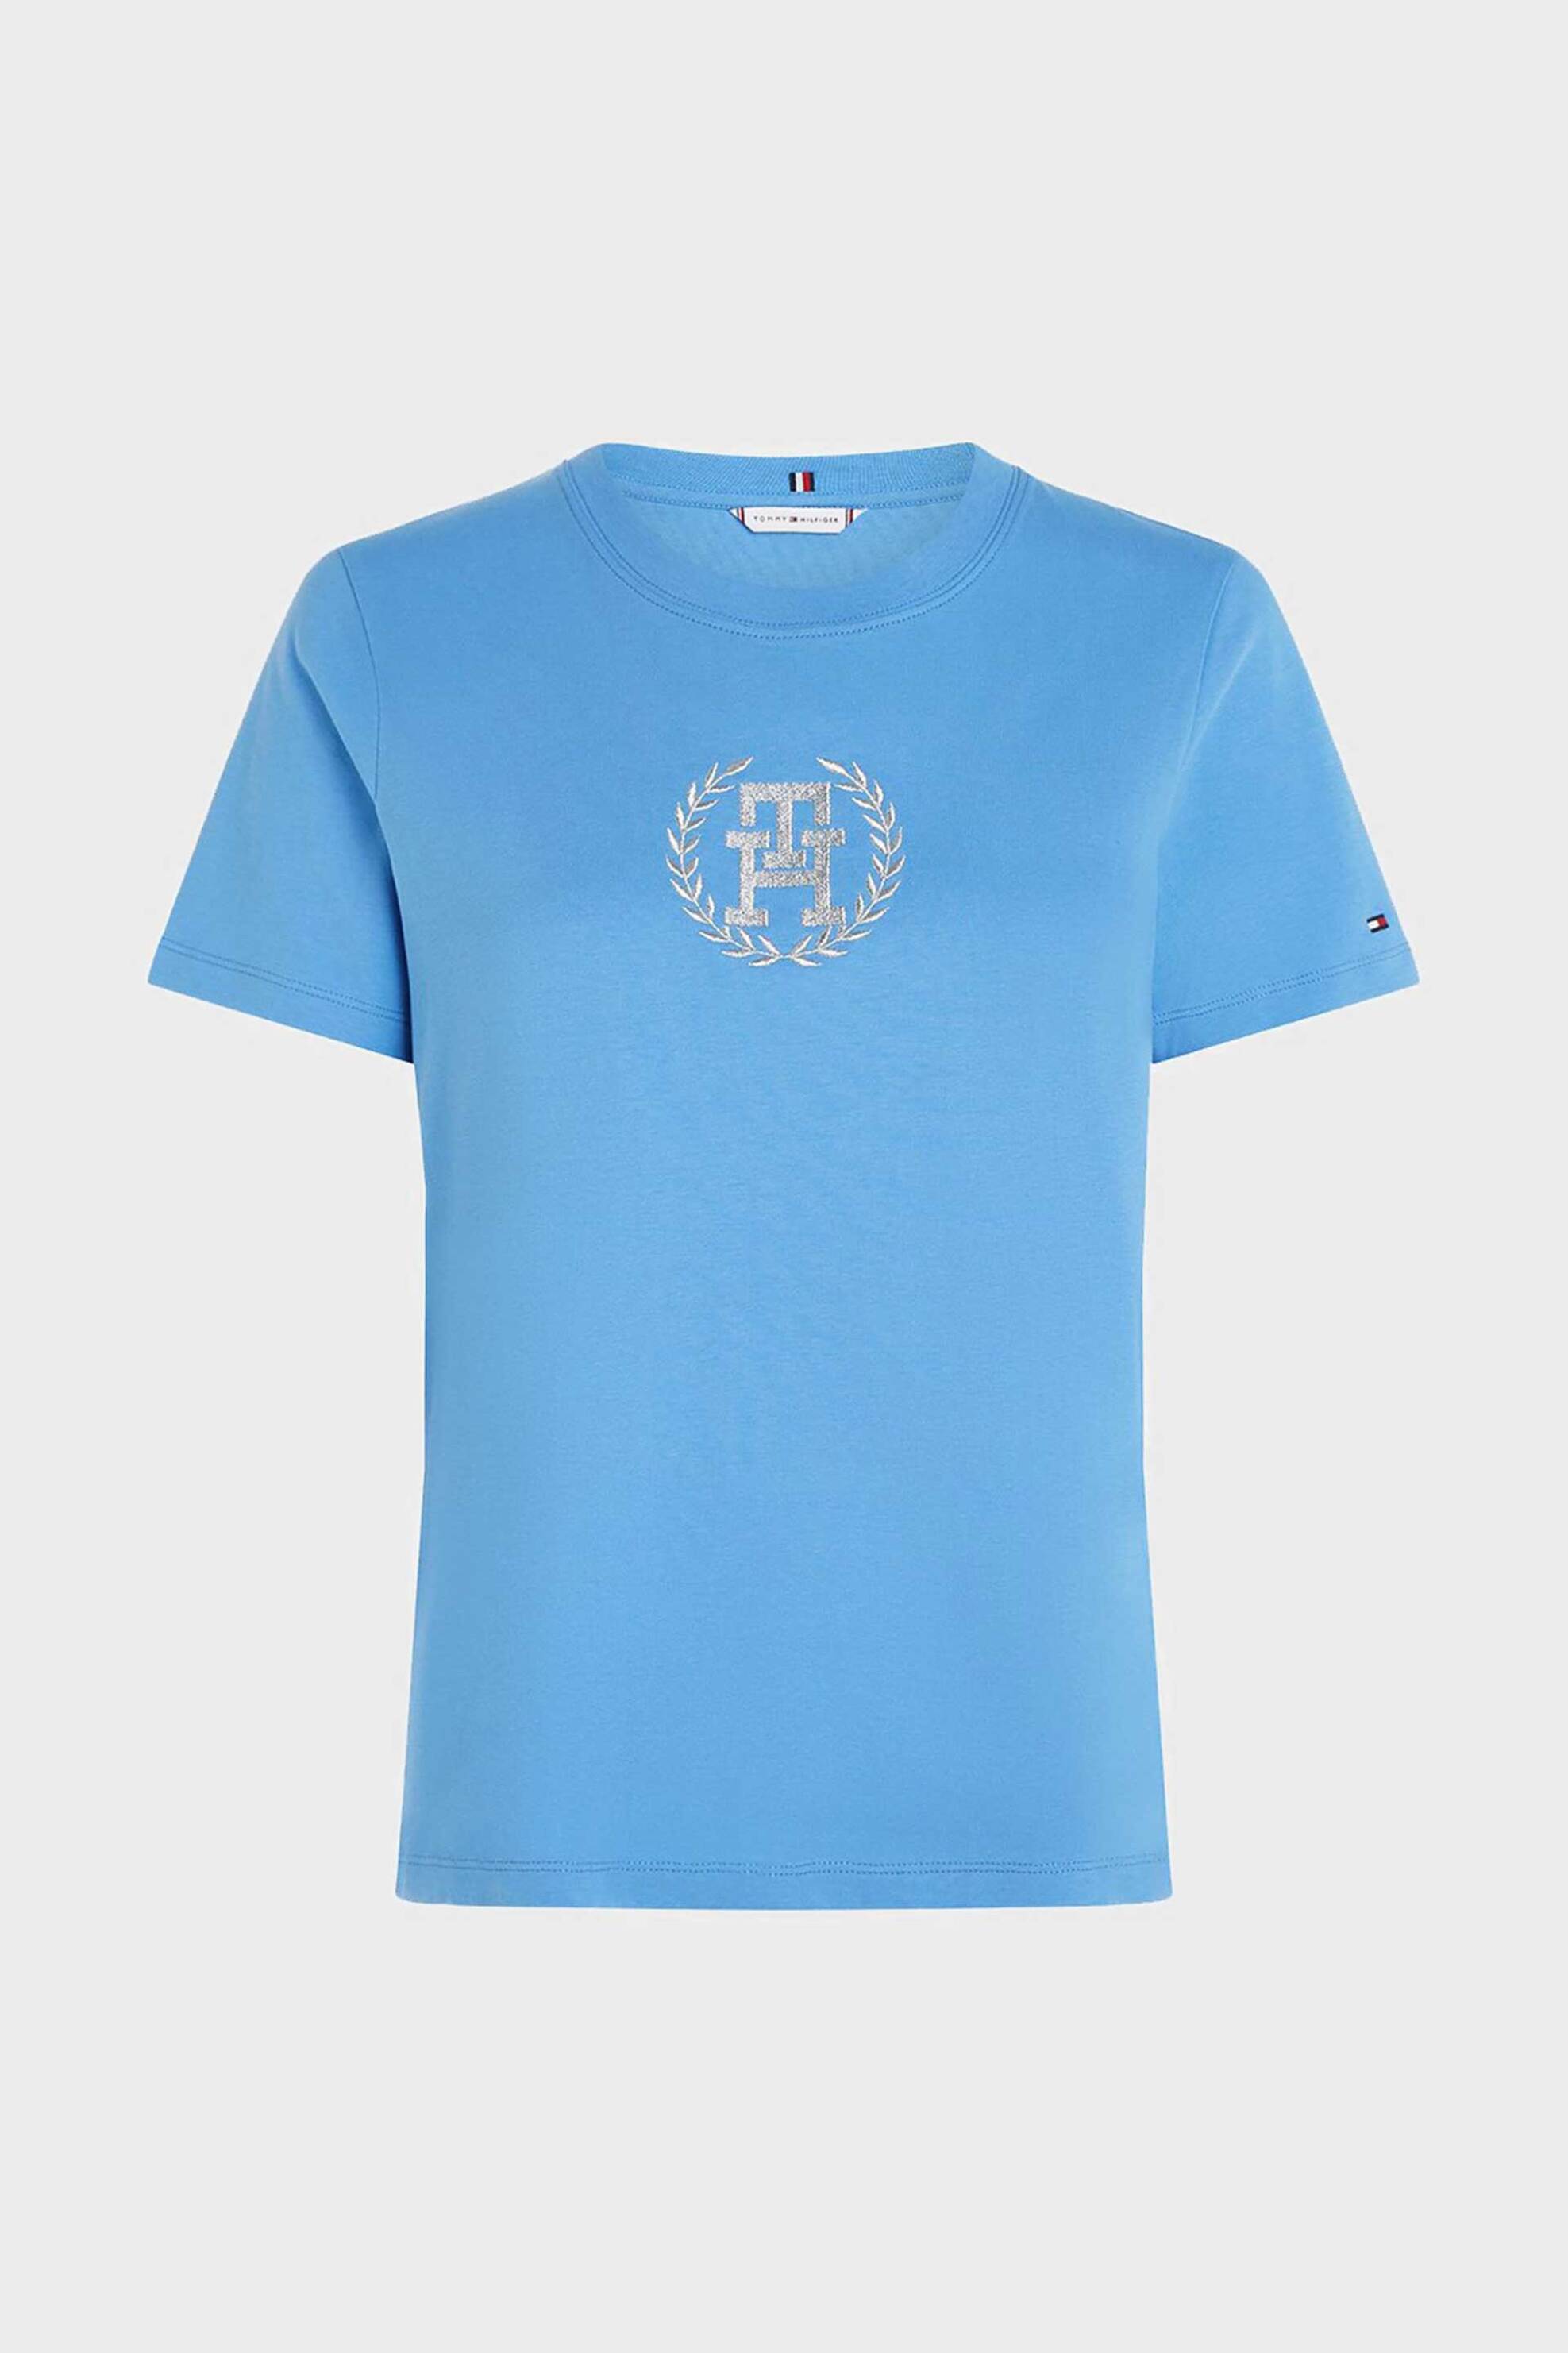 Γυναικεία Ρούχα & Αξεσουάρ > Γυναικεία Ρούχα > Γυναικεία Τοπ > Γυναικεία T-Shirts Tommy Hilfiger γυναικείο βαμβακερό T-shirt με contrast logo print - WW0WW41765 Γαλάζιο